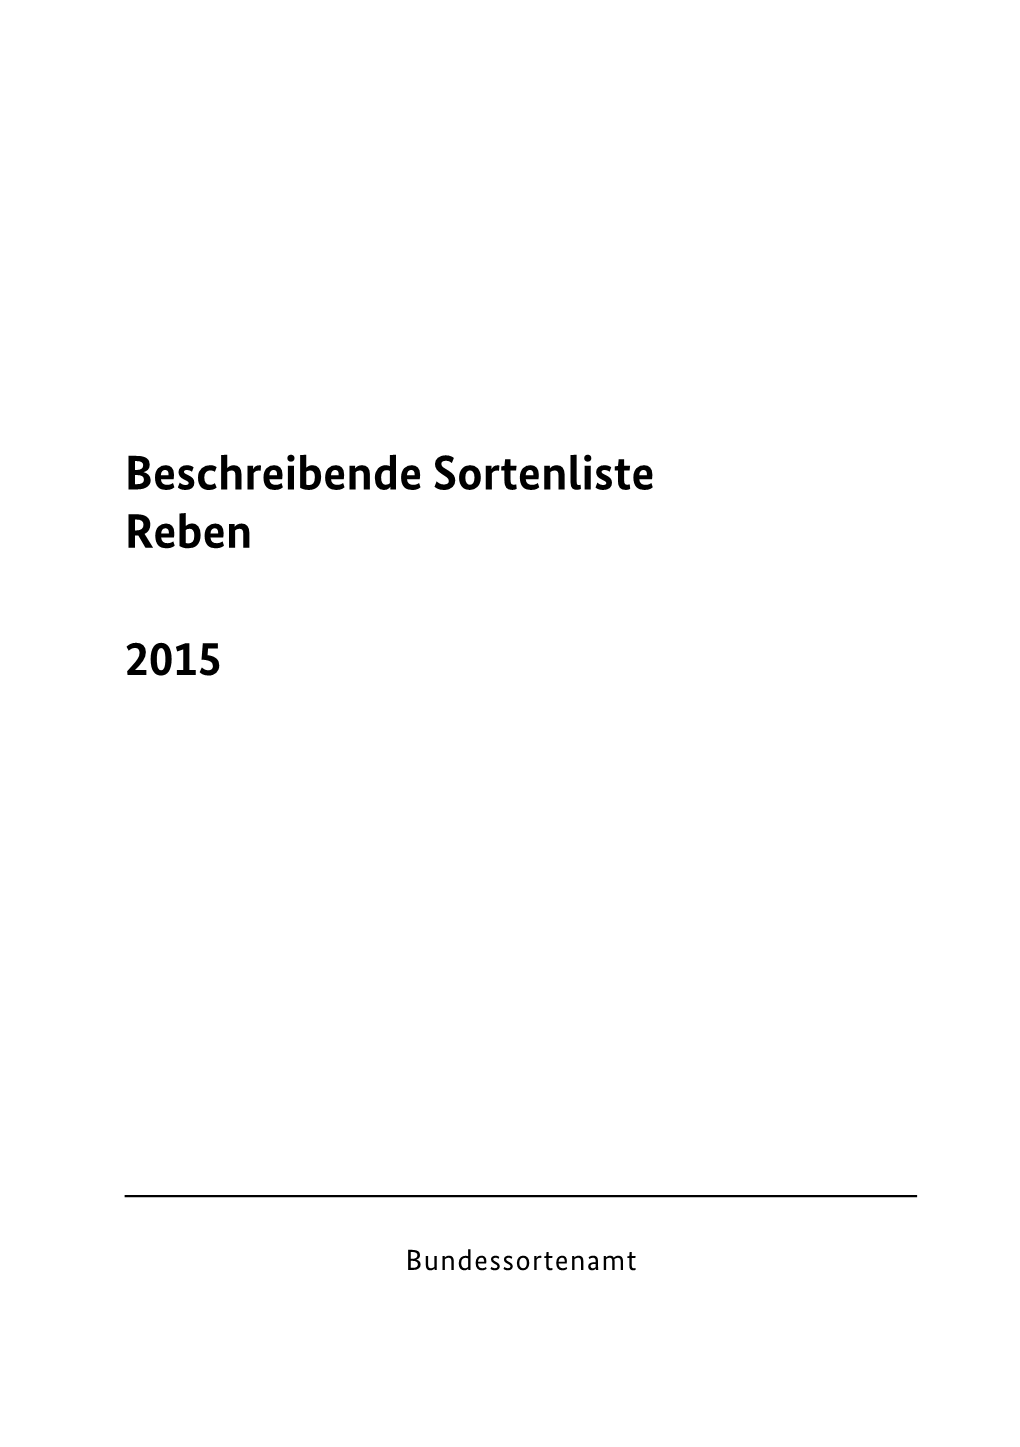 Beschreibende Sortenliste Reben 2015